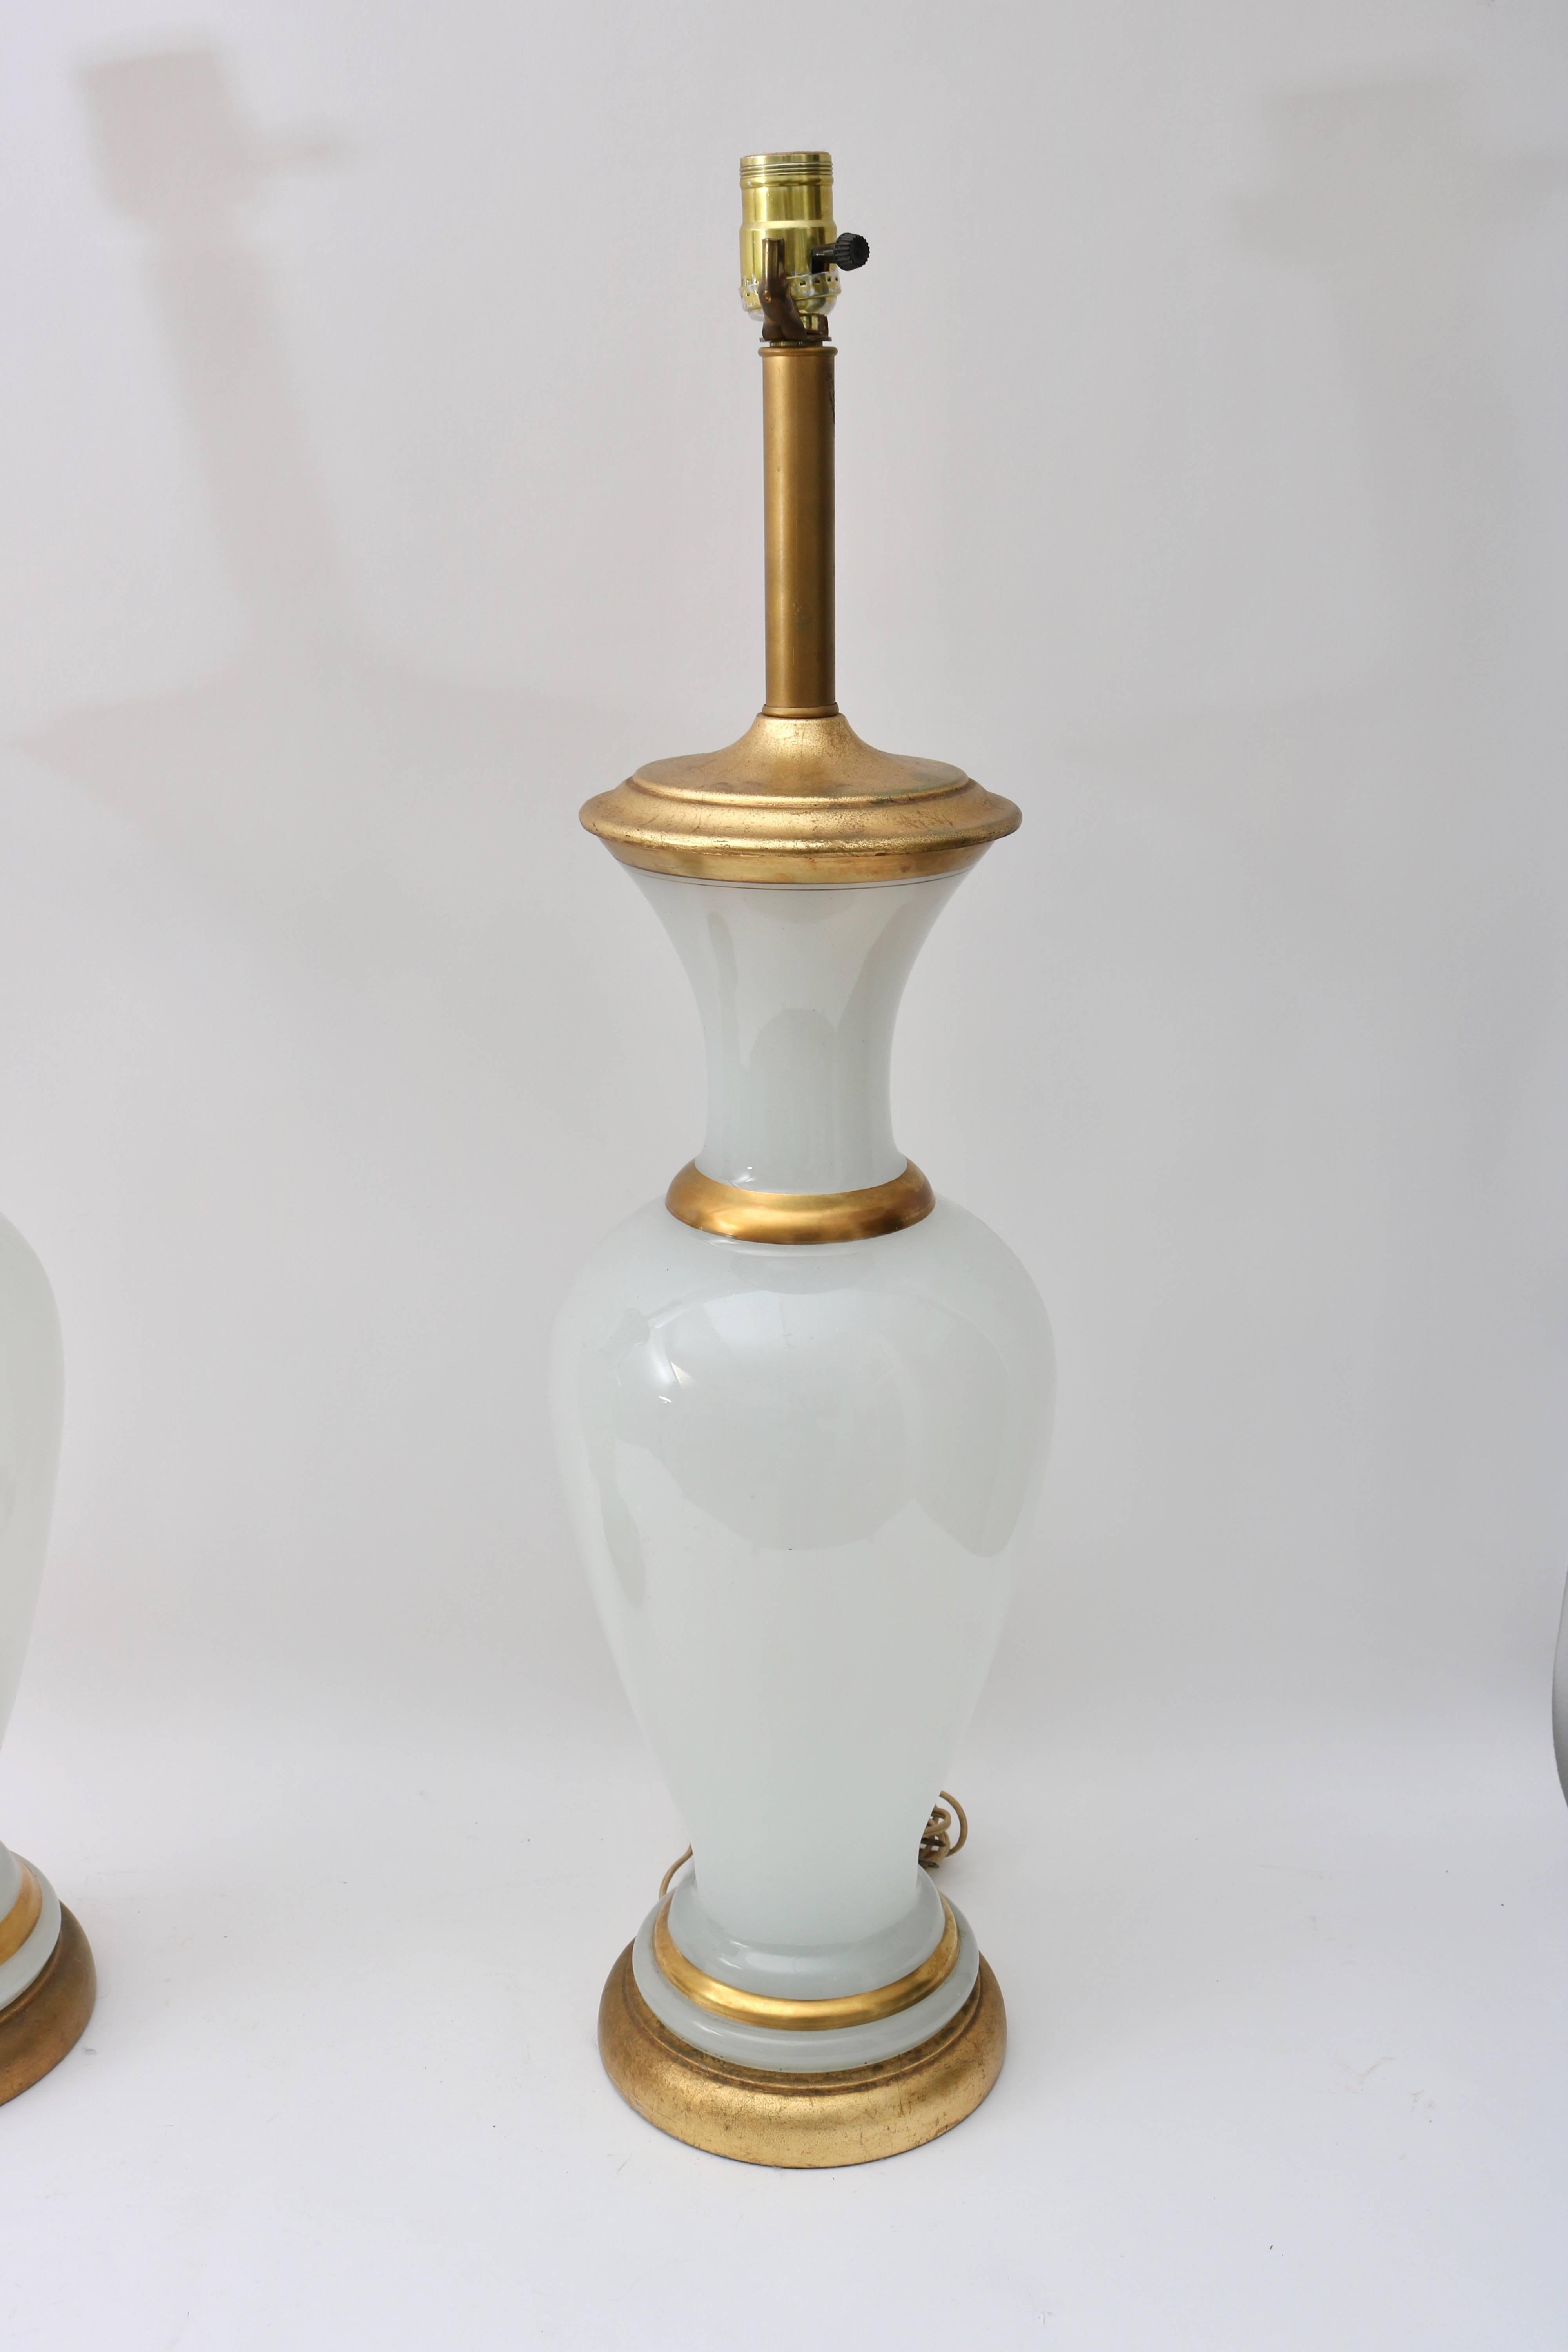 Cette paire de lampes de table élégante est tout à fait dans le style des années 1960 avec sa couleur et sa forme sophistiquée Hollywood Regency. Le verre opalin est rehaussé de bandes dorées et d'une base et d'un capuchon en feuilles